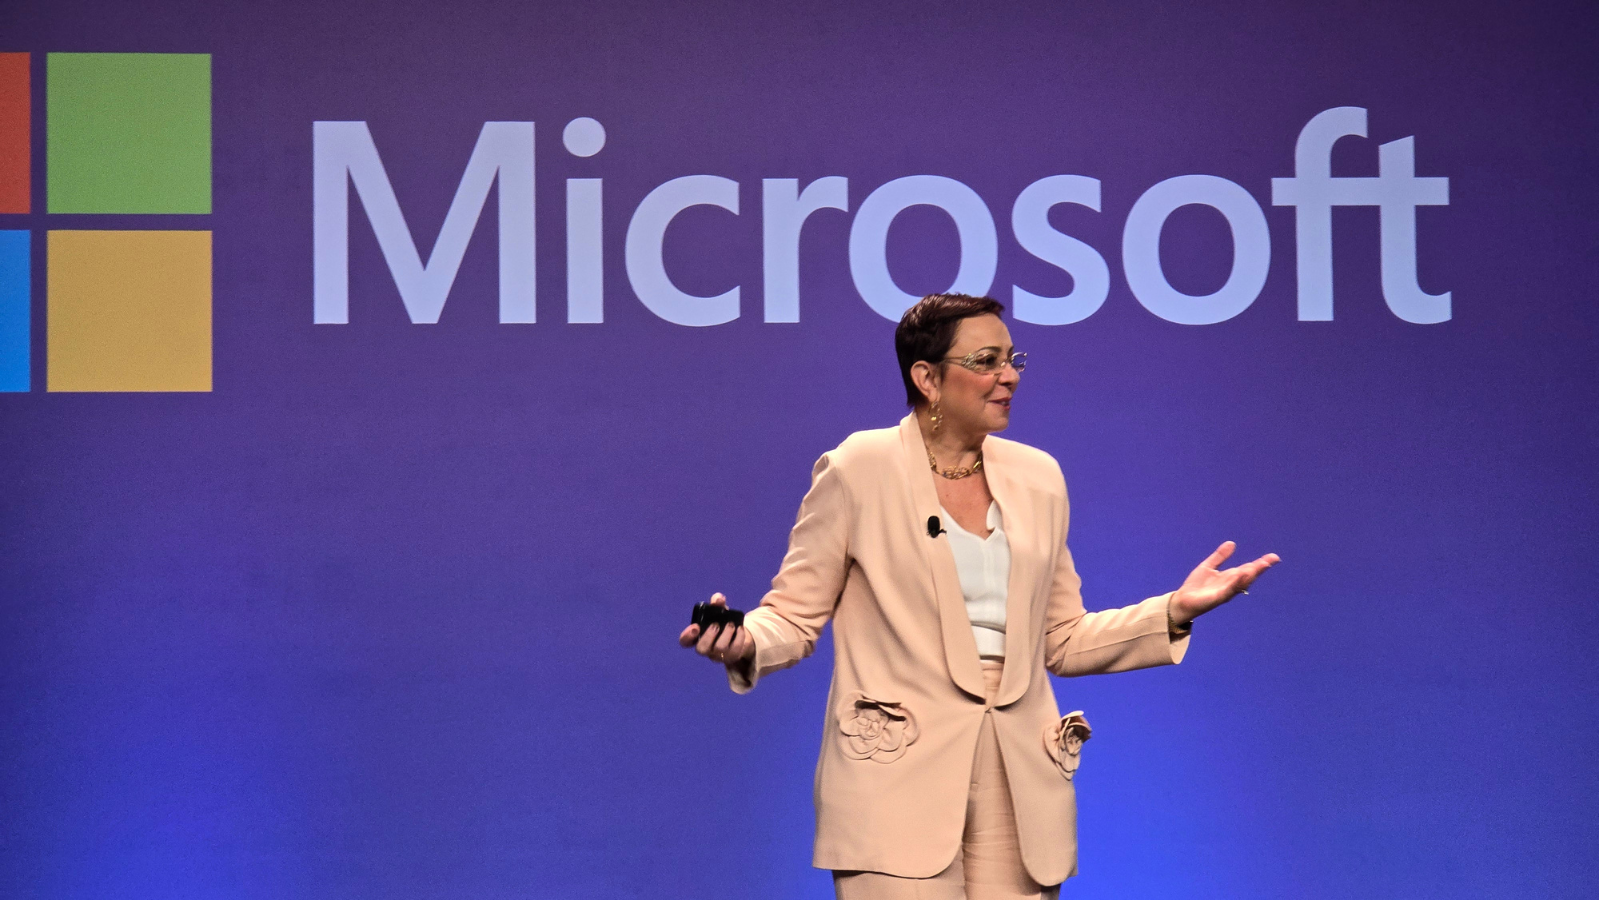 Microsoft realiza “ai tour”, evento para incentivar acesso às ias no brasil. Durante o microsoft ai tour são paulo, a empresa reuniu parceiros, desenvolvedores e a imprensa para falar sobre os desafios das ias no brasil e como fomentar esse mercado